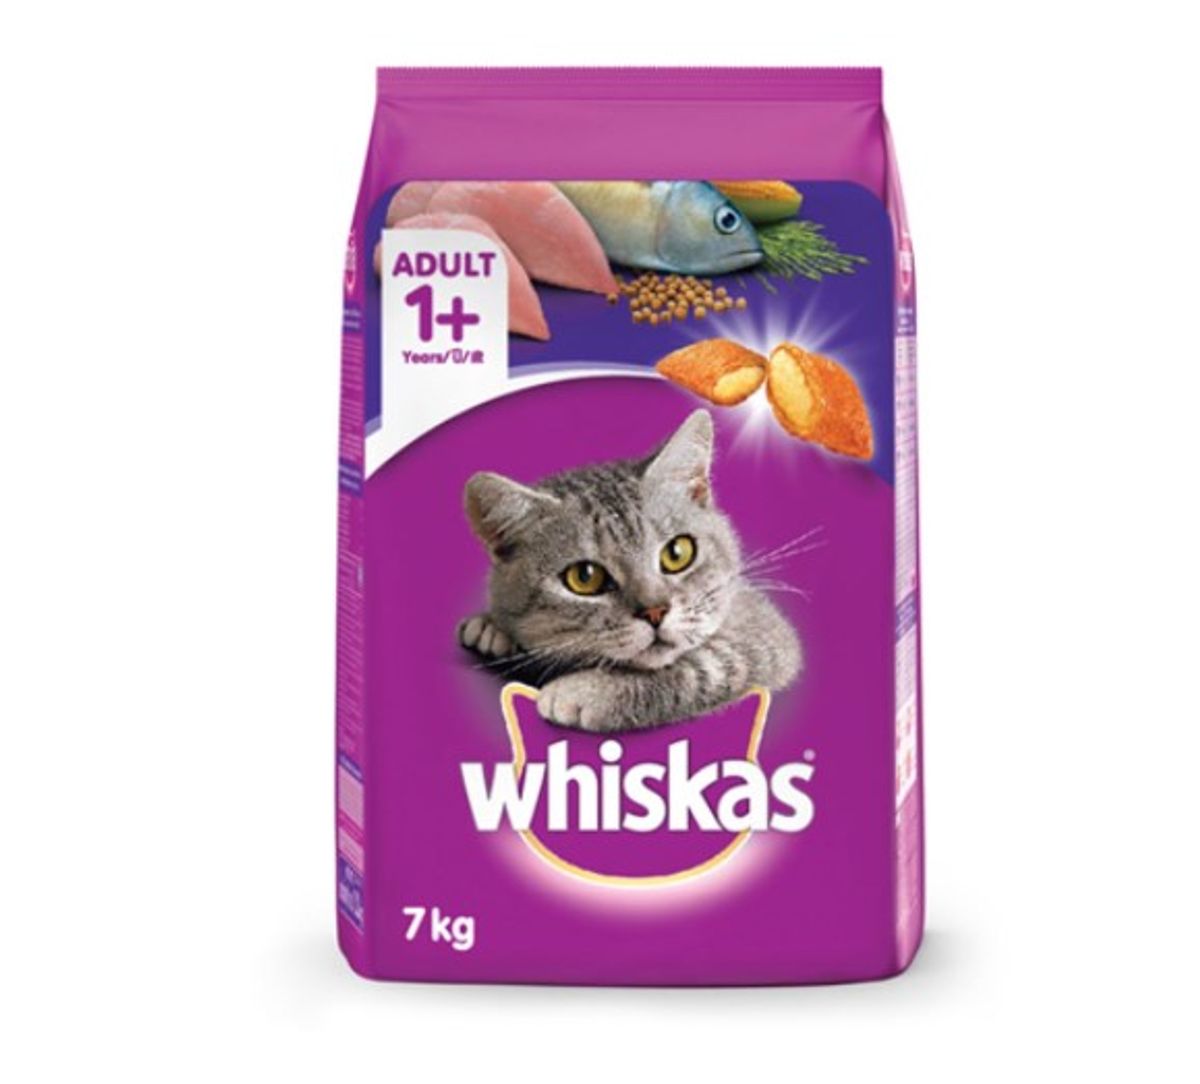 ทาสแมวแวะมา อาหารแมวยี่ห้อไหนดี 2020 อร่อย ราคาไม่แพง สิงหาคม 2022 - Sale  Here